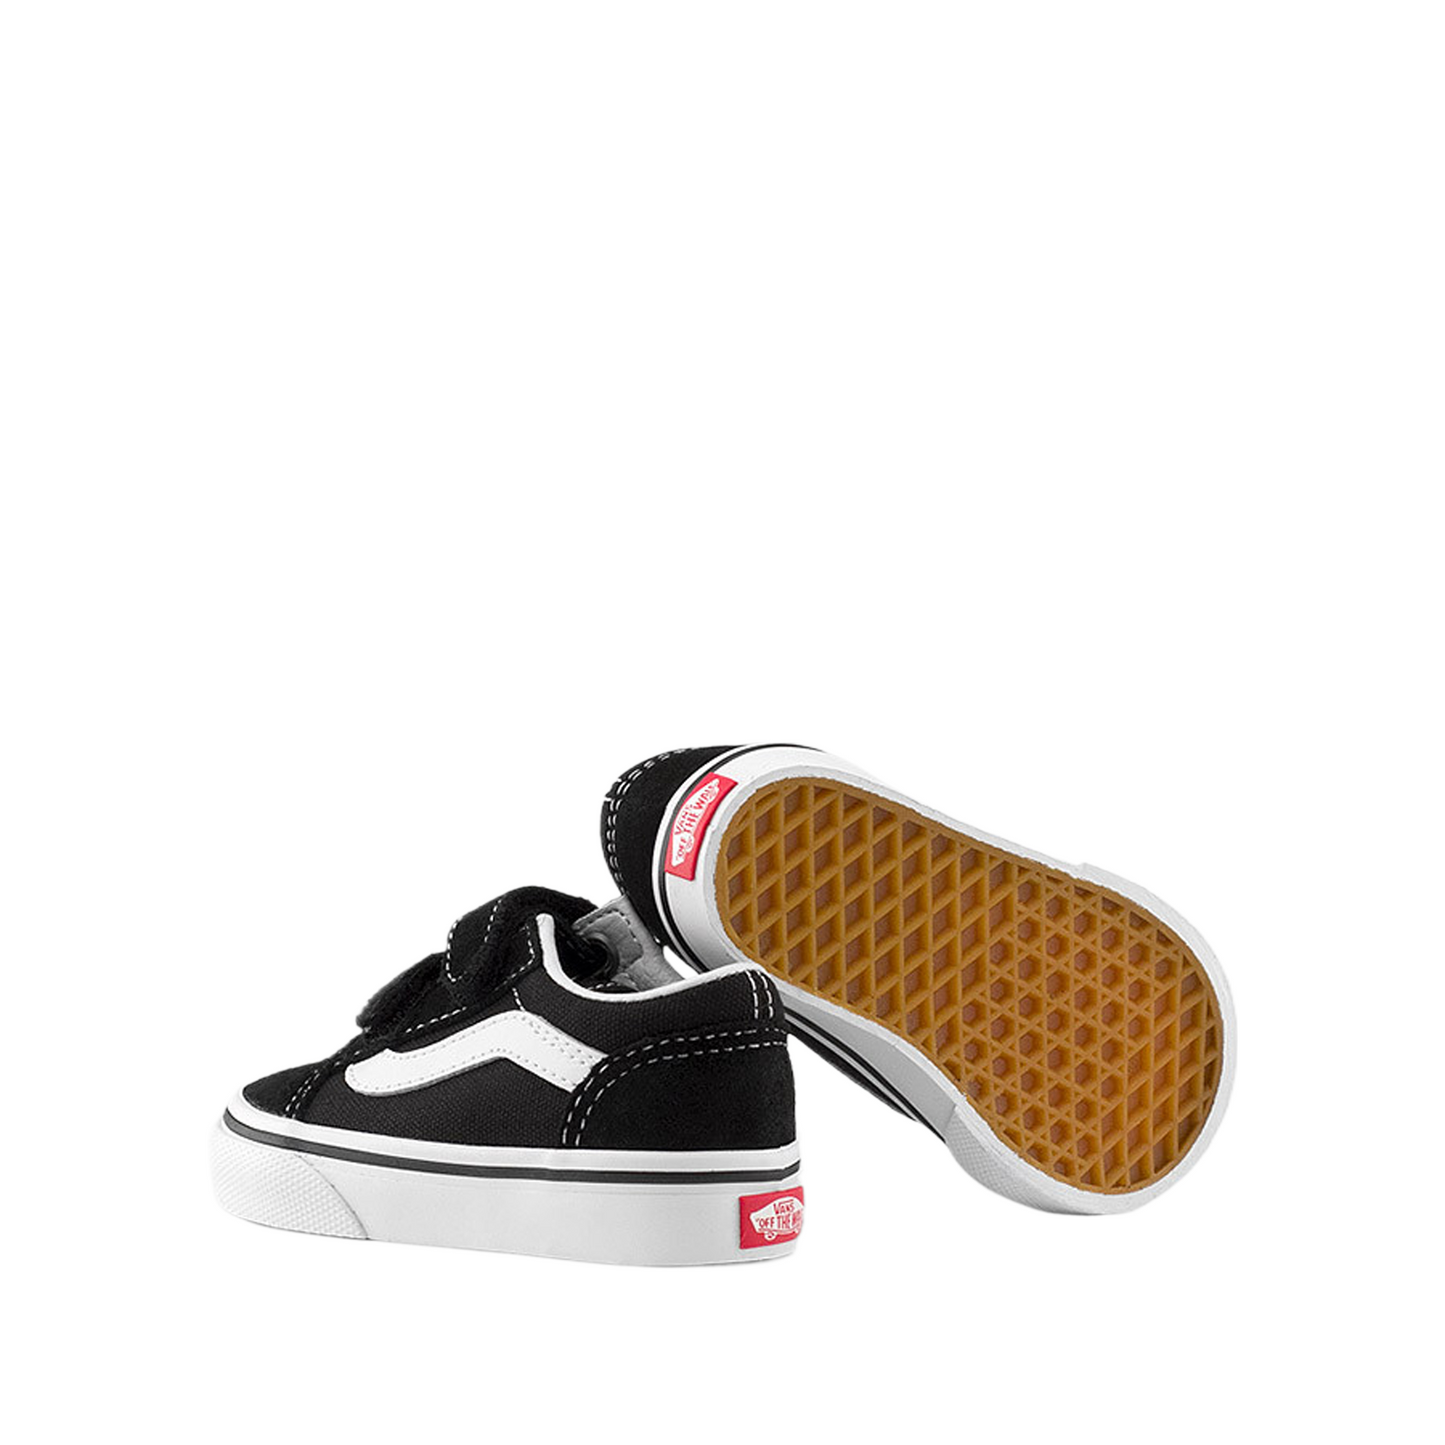 Vans Toddler Old Skool V Sneaker Black / White VN000D3YBLK